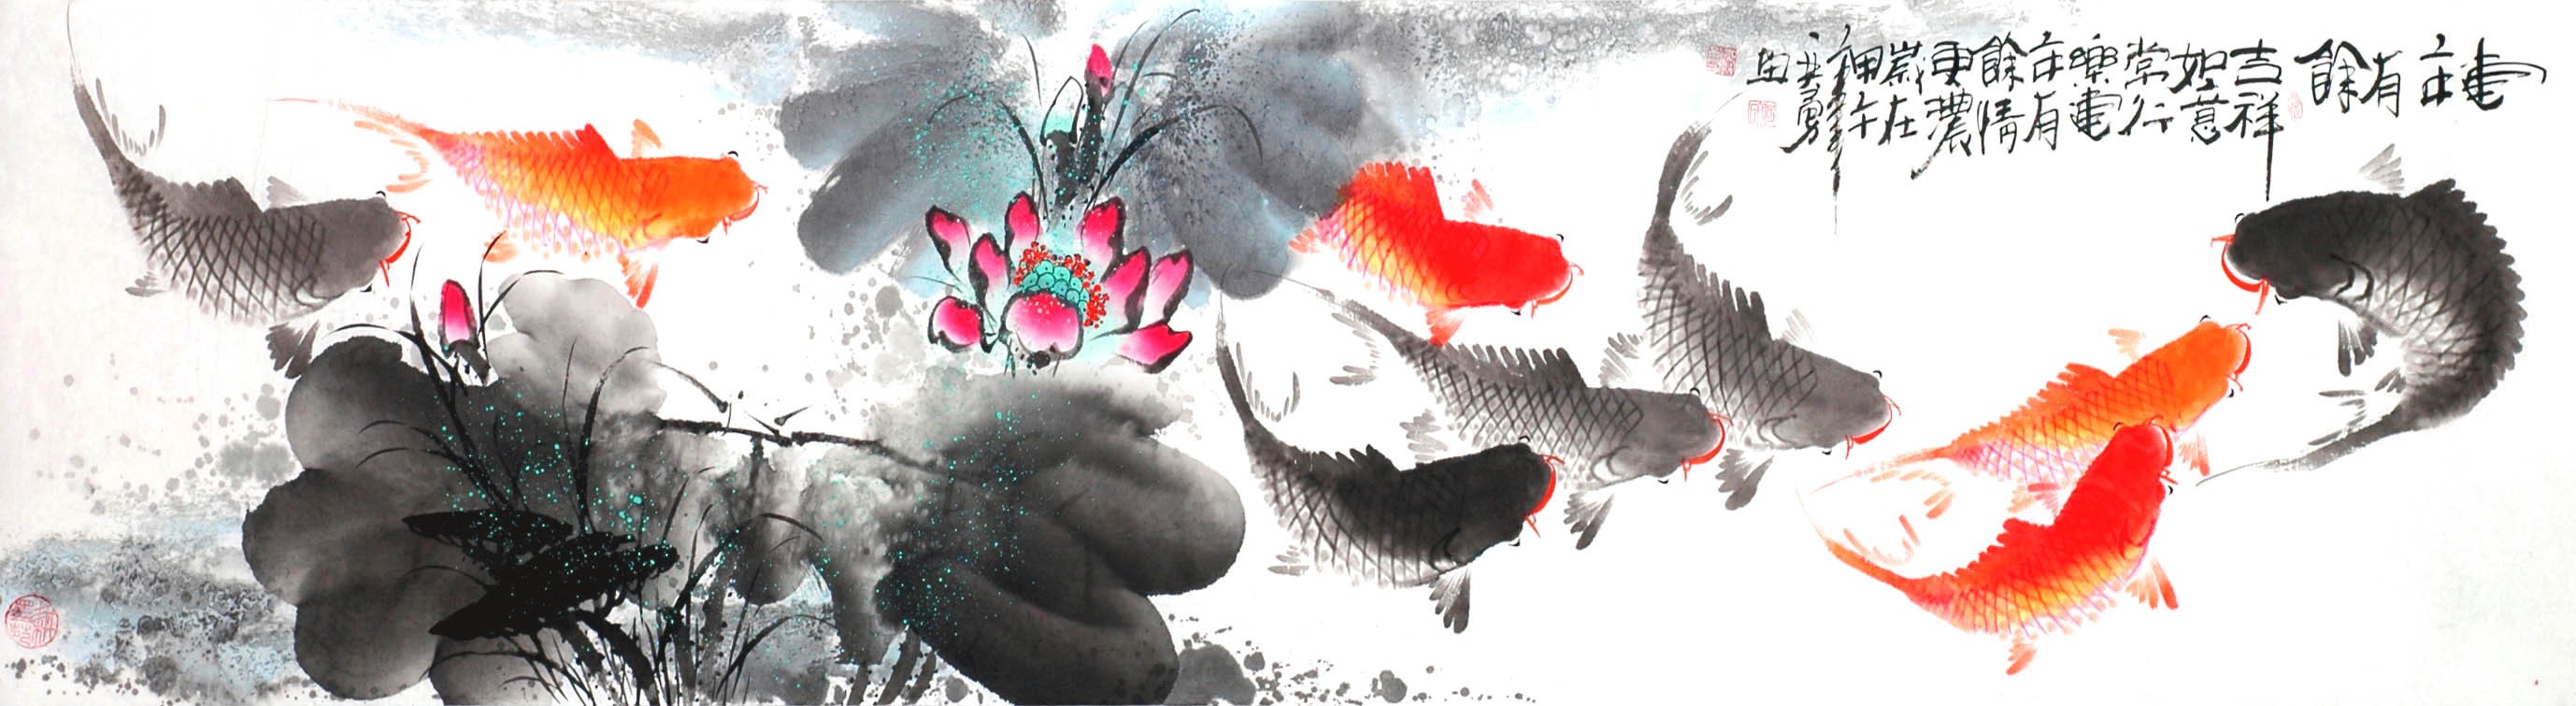 Chinese Fish Painting - CNAG013925